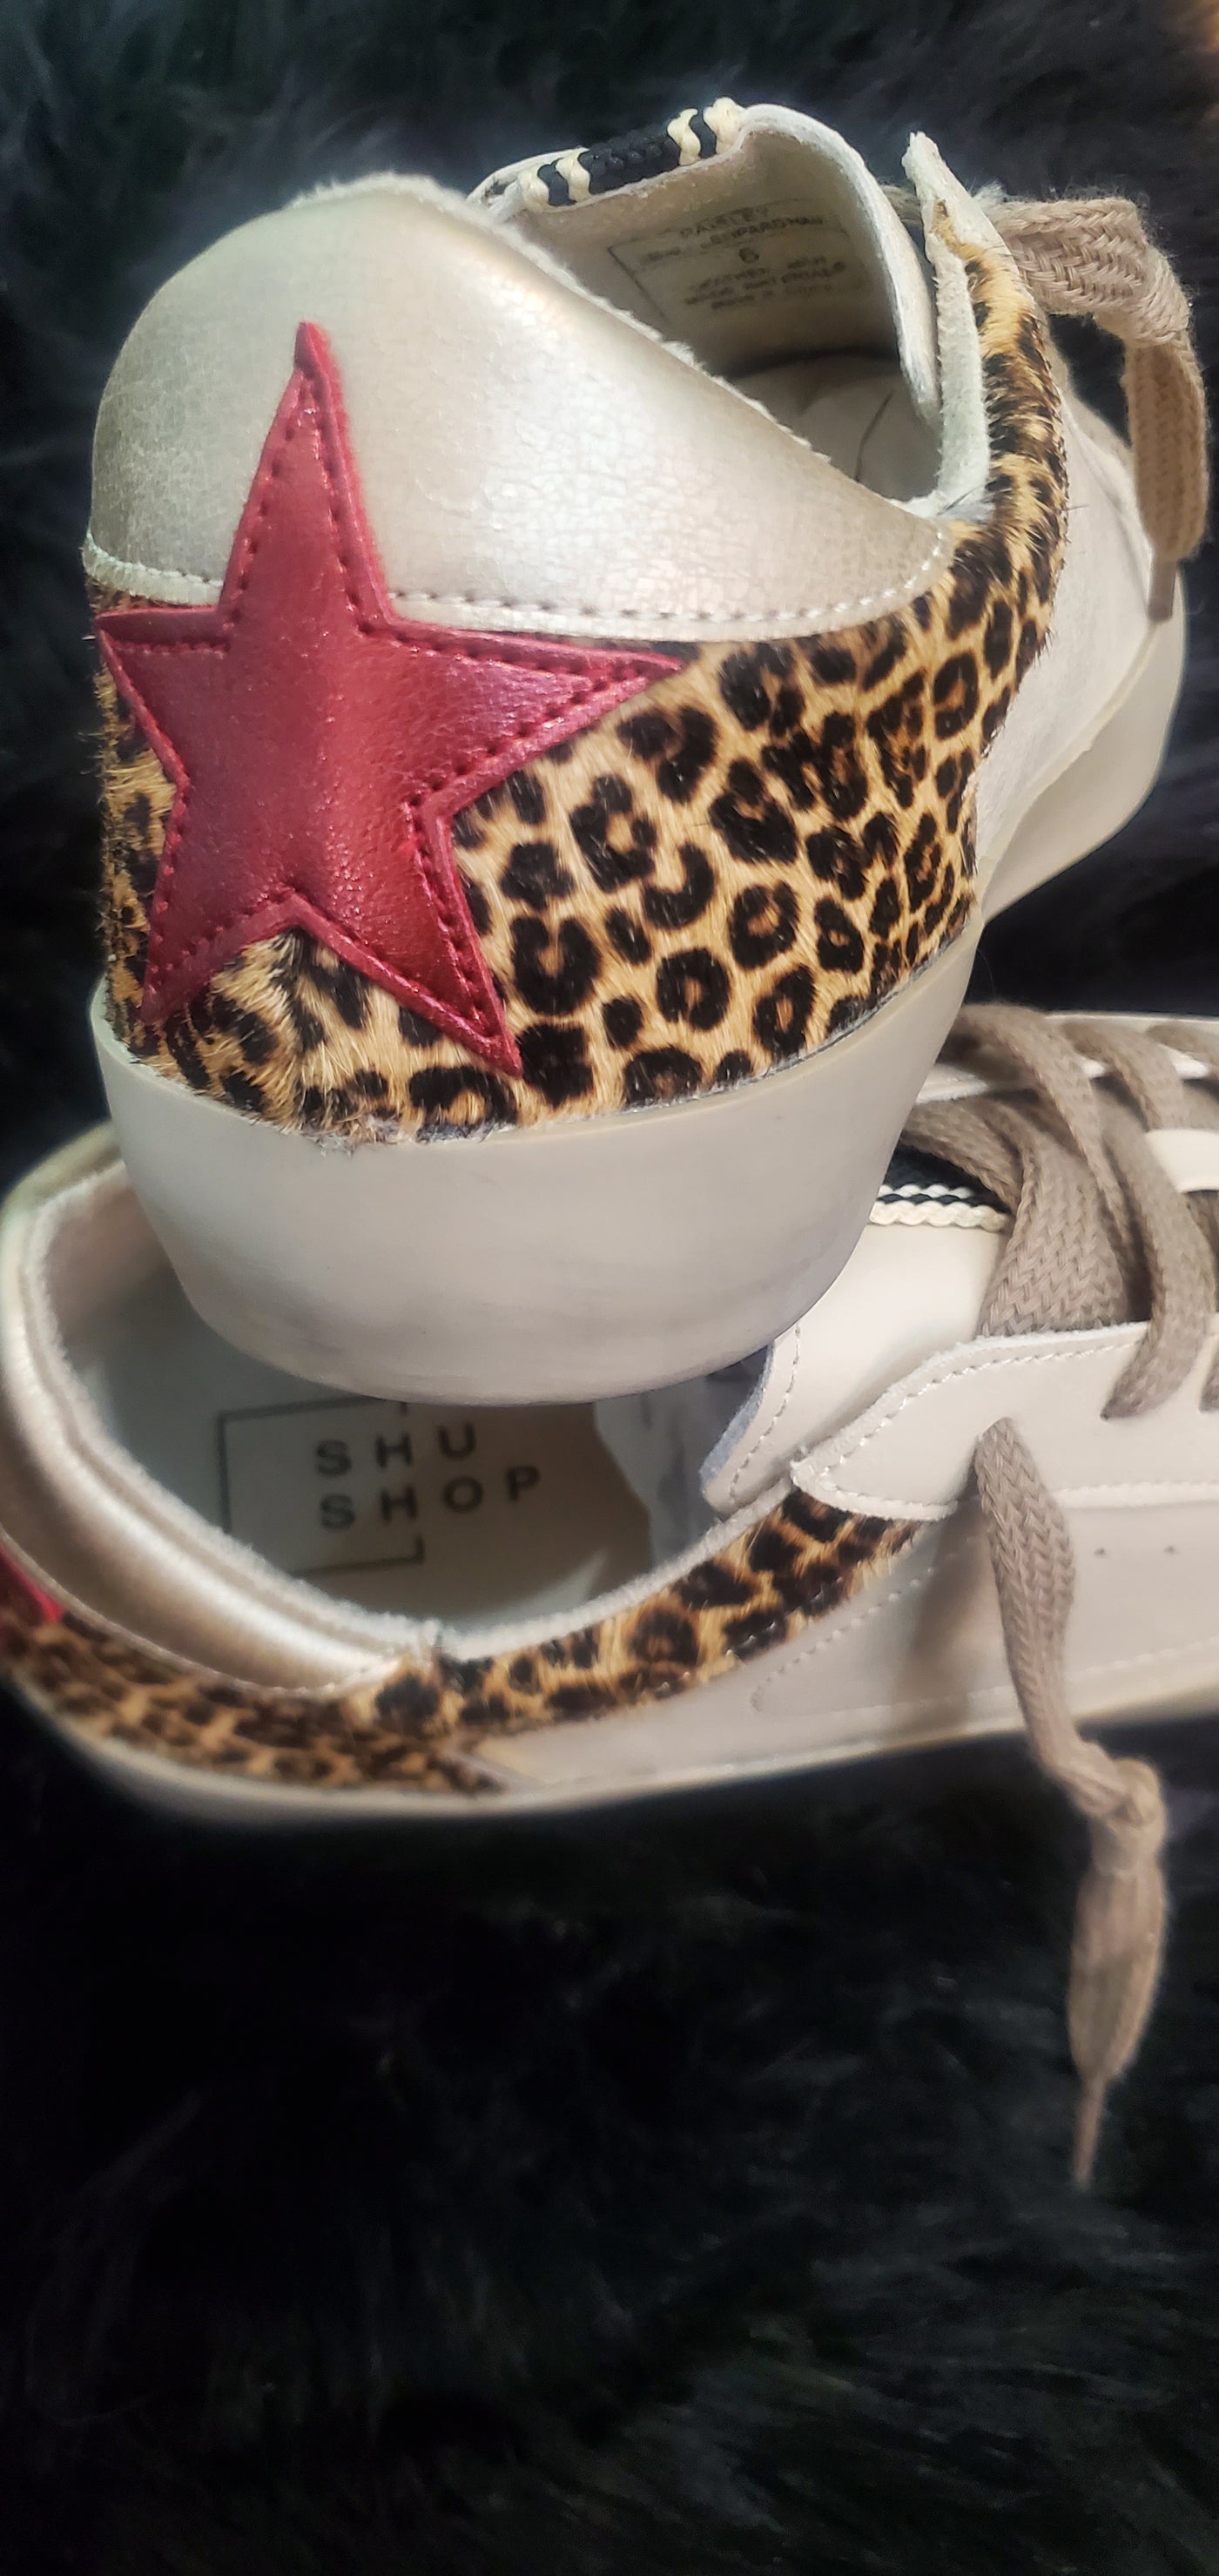 Leopard Hair on Hide Star Sneaker Shushop